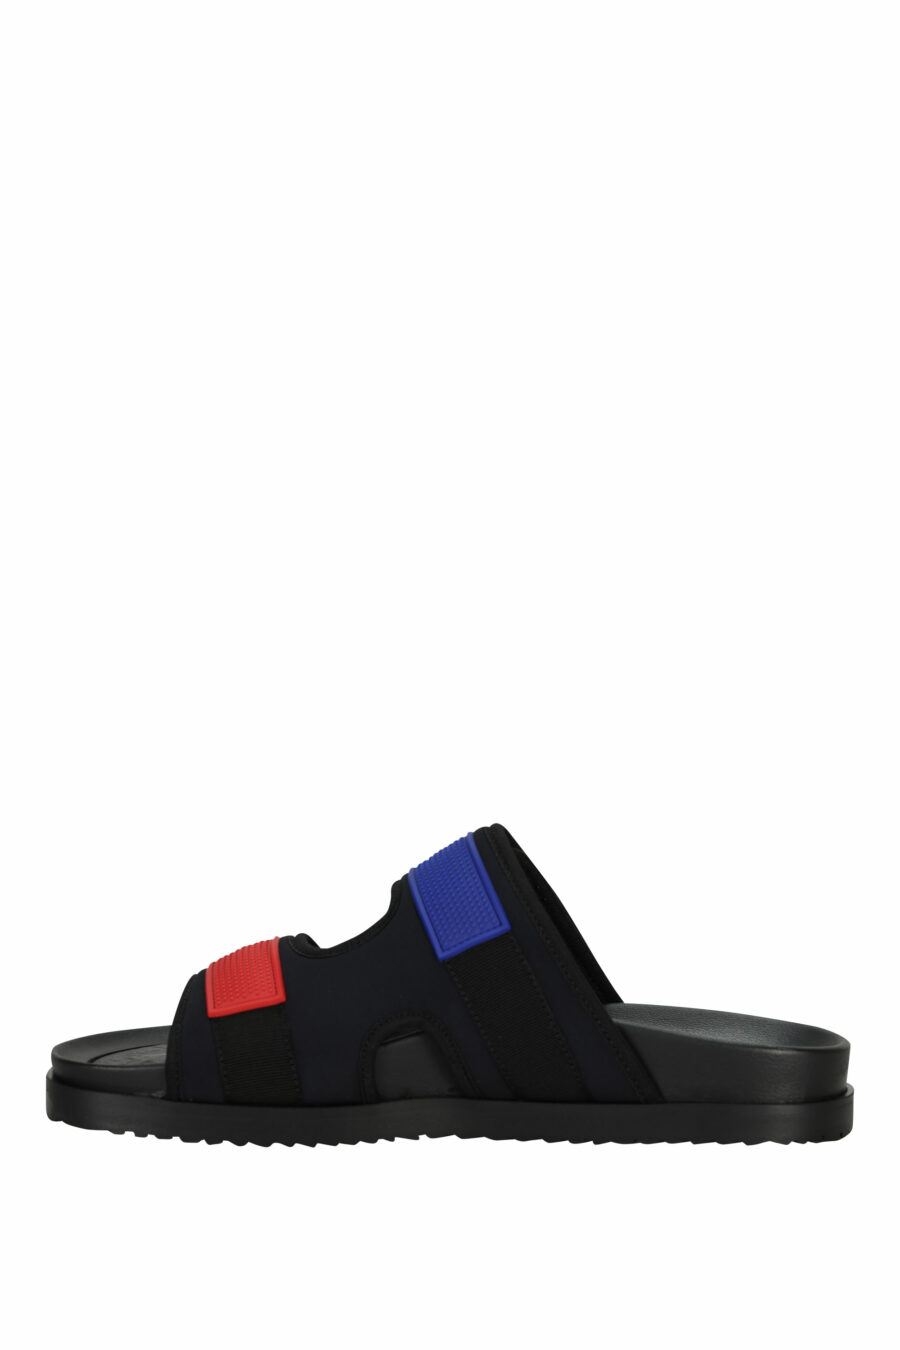 Schwarze Sandalen mit rotem und blauem Klettverschluss - 805777314715 2